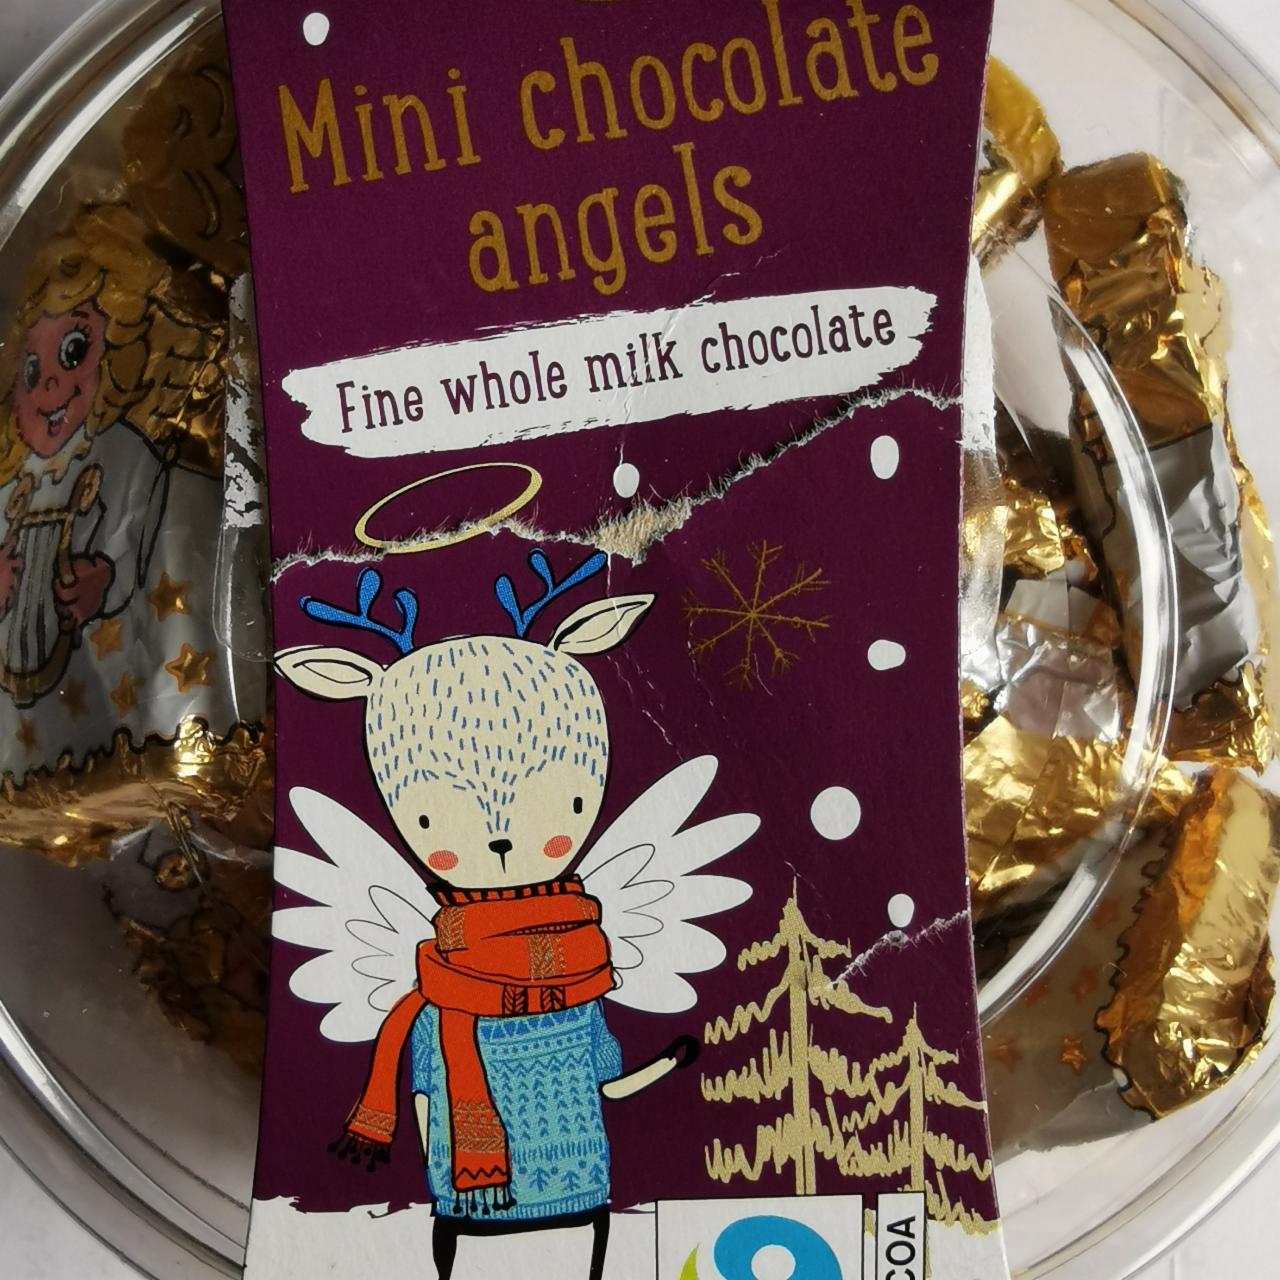 Fotografie - Mini chocolate angels FIne whole milk chocolate Chocola